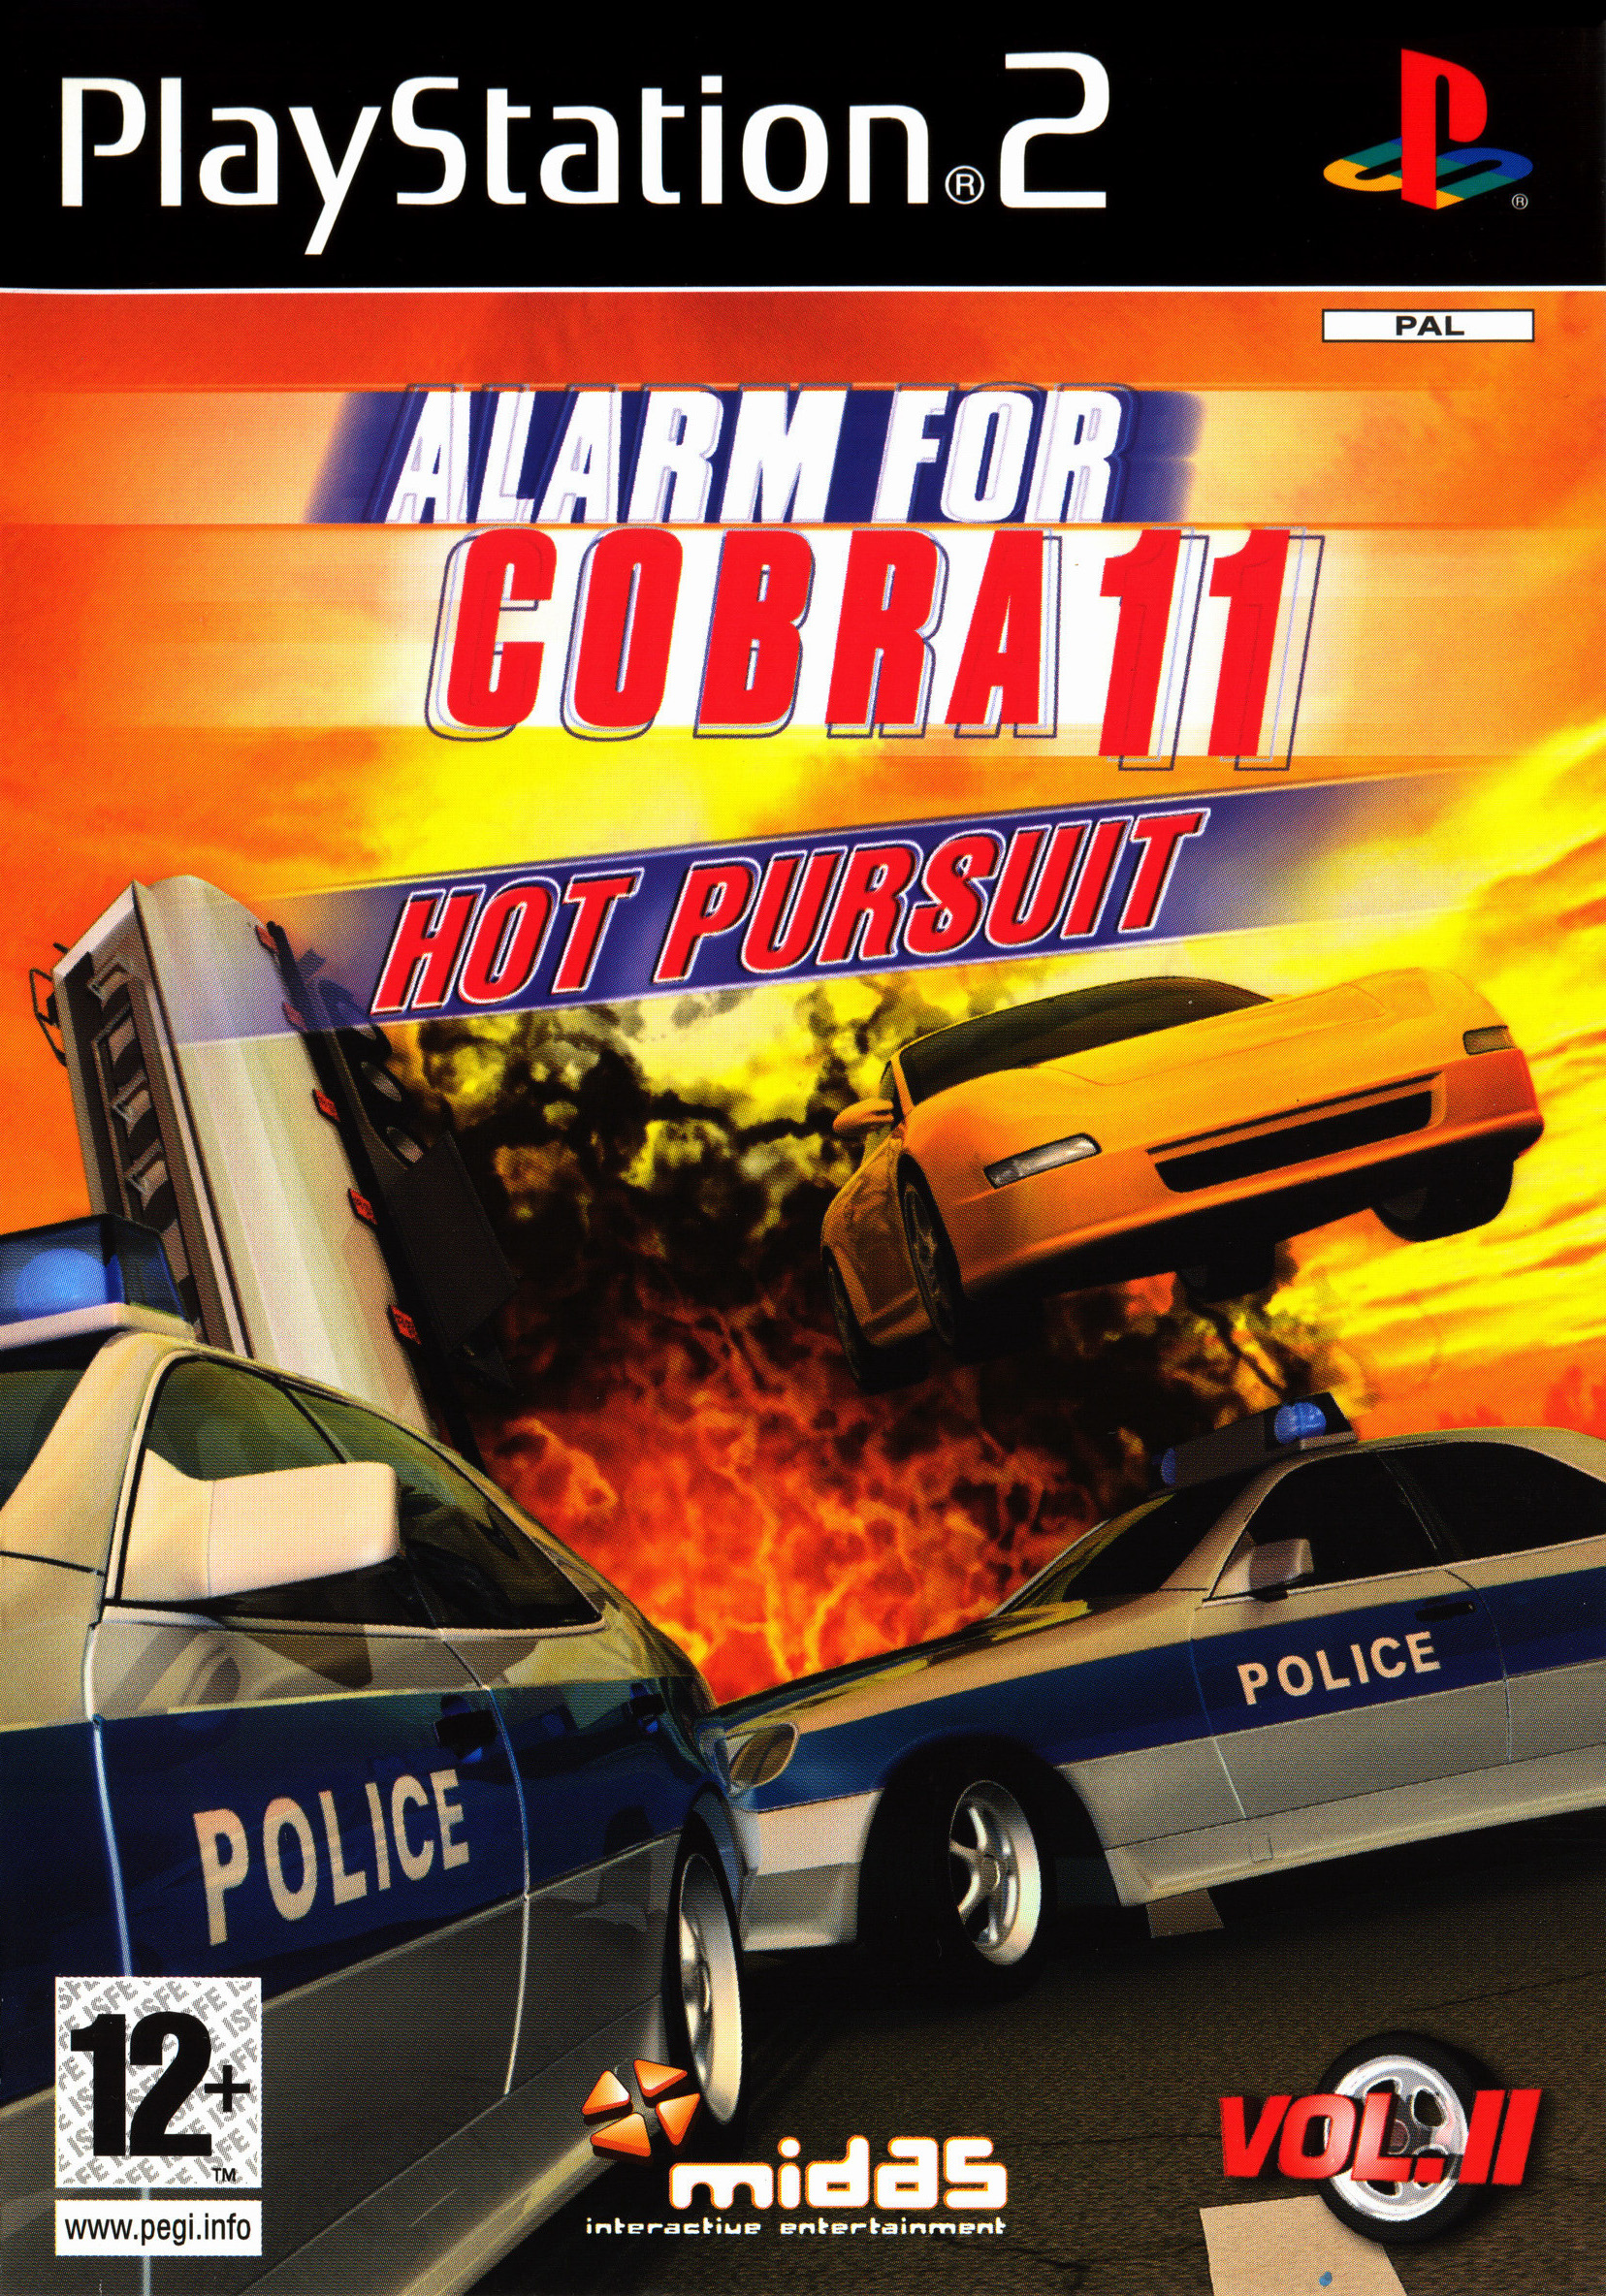 Alarm for Cobra 11 Vol. 2: Hot Pursuit Details - LaunchBox ...